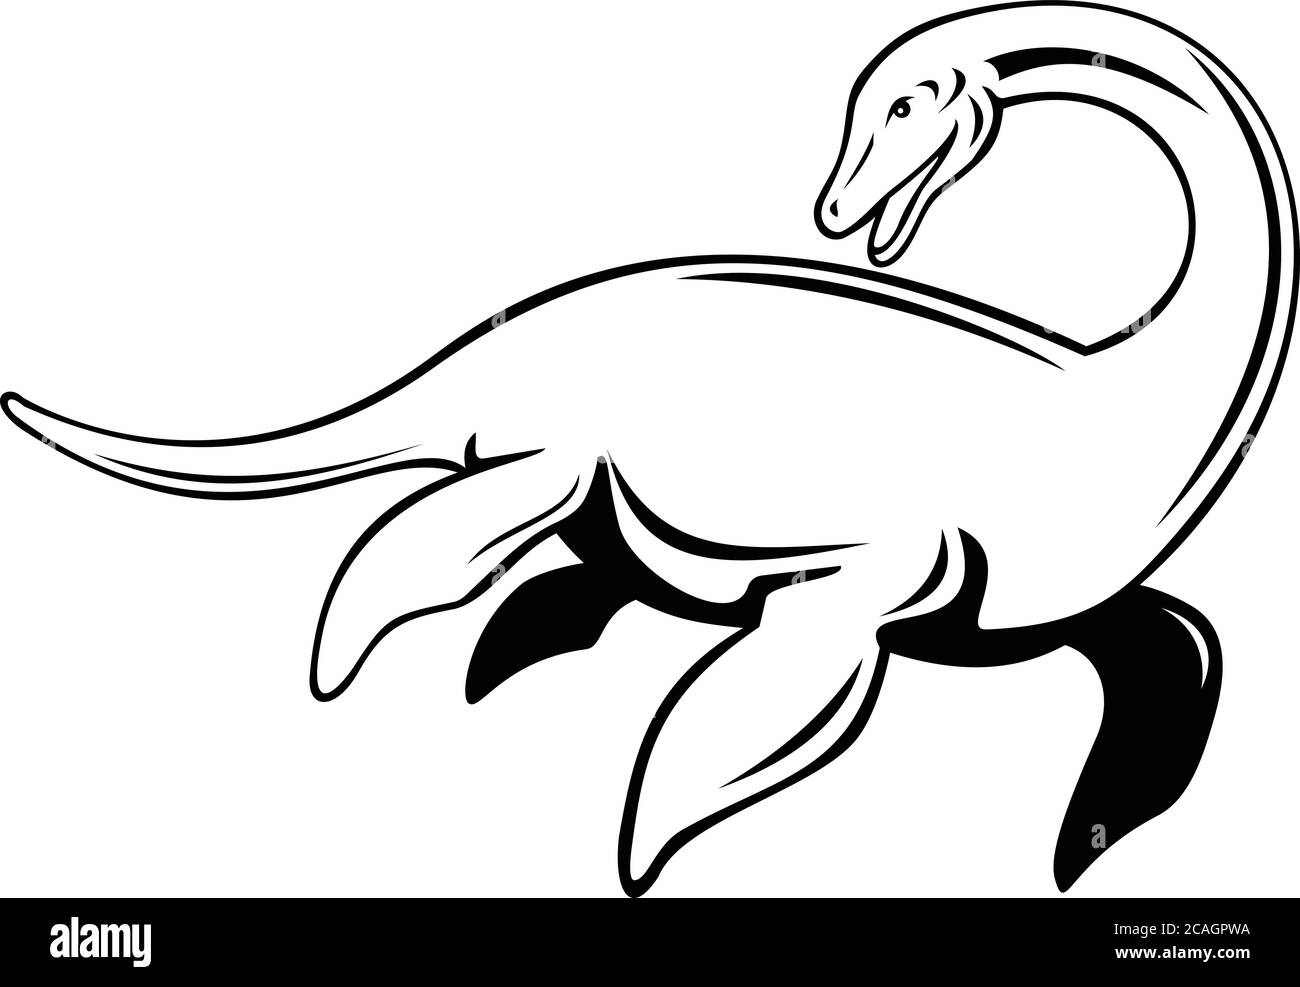 Illustration de style rétro d'un monstre du Loch Ness ou Nessie, une cryptide en cryptozoologie et du folklore écossais qui est grand long-necked, vu de sid Illustration de Vecteur